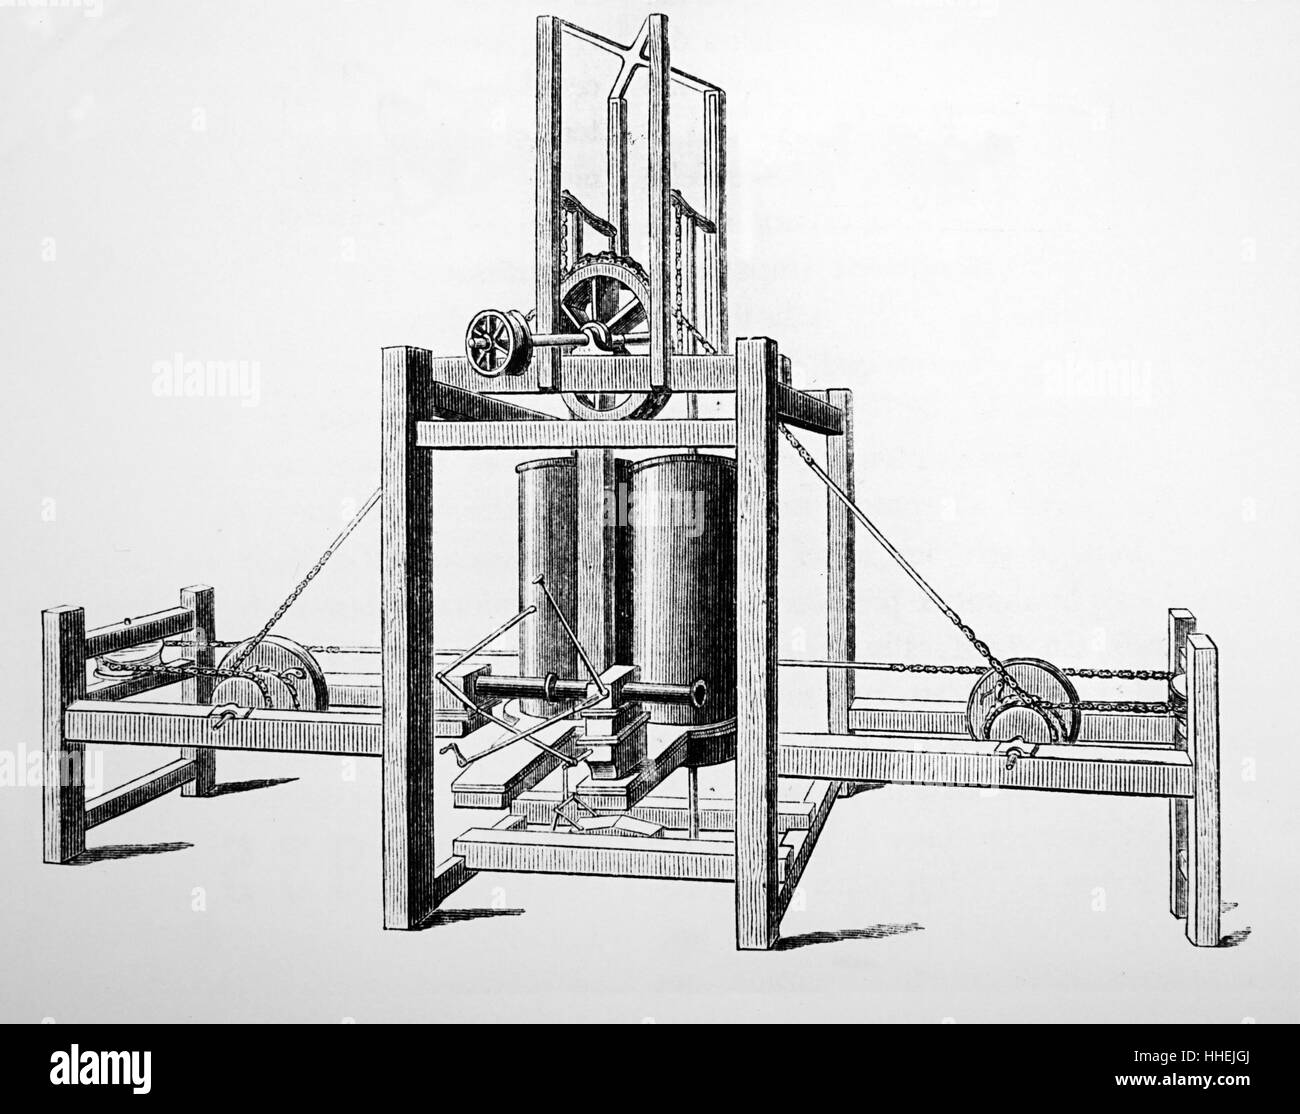 Gravur der Dampfmaschine Symington's, erfolgreich eingesetzt, um die Paddel von einem Boot auf See Dalswinton, Schottland zu fahren. Vom 18. Jahrhundert Stockfoto